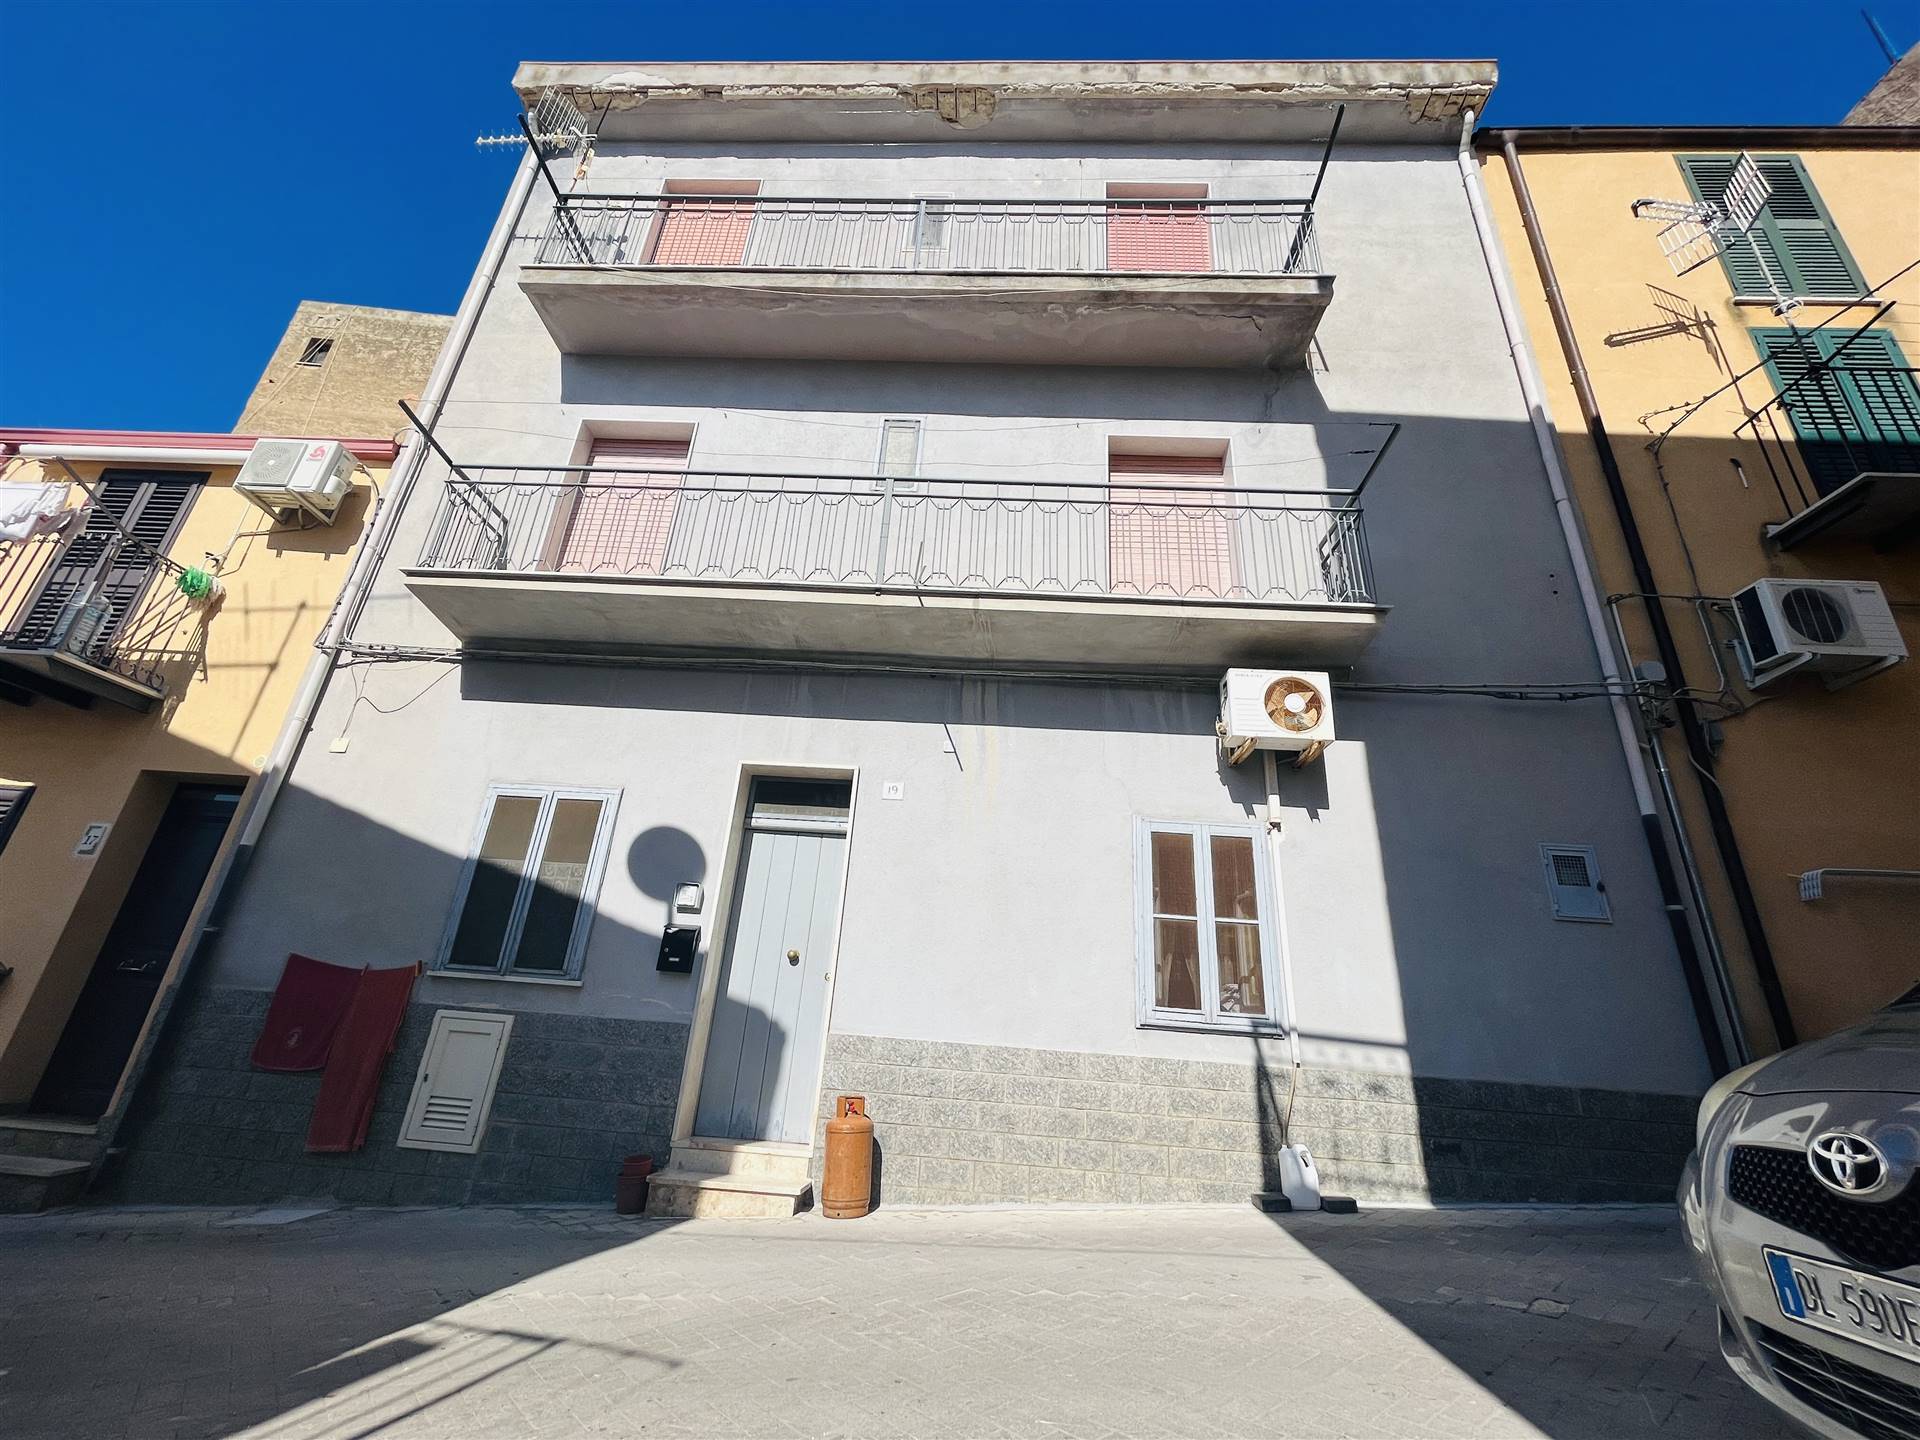 Casa singola in vendita a Lascari Palermo